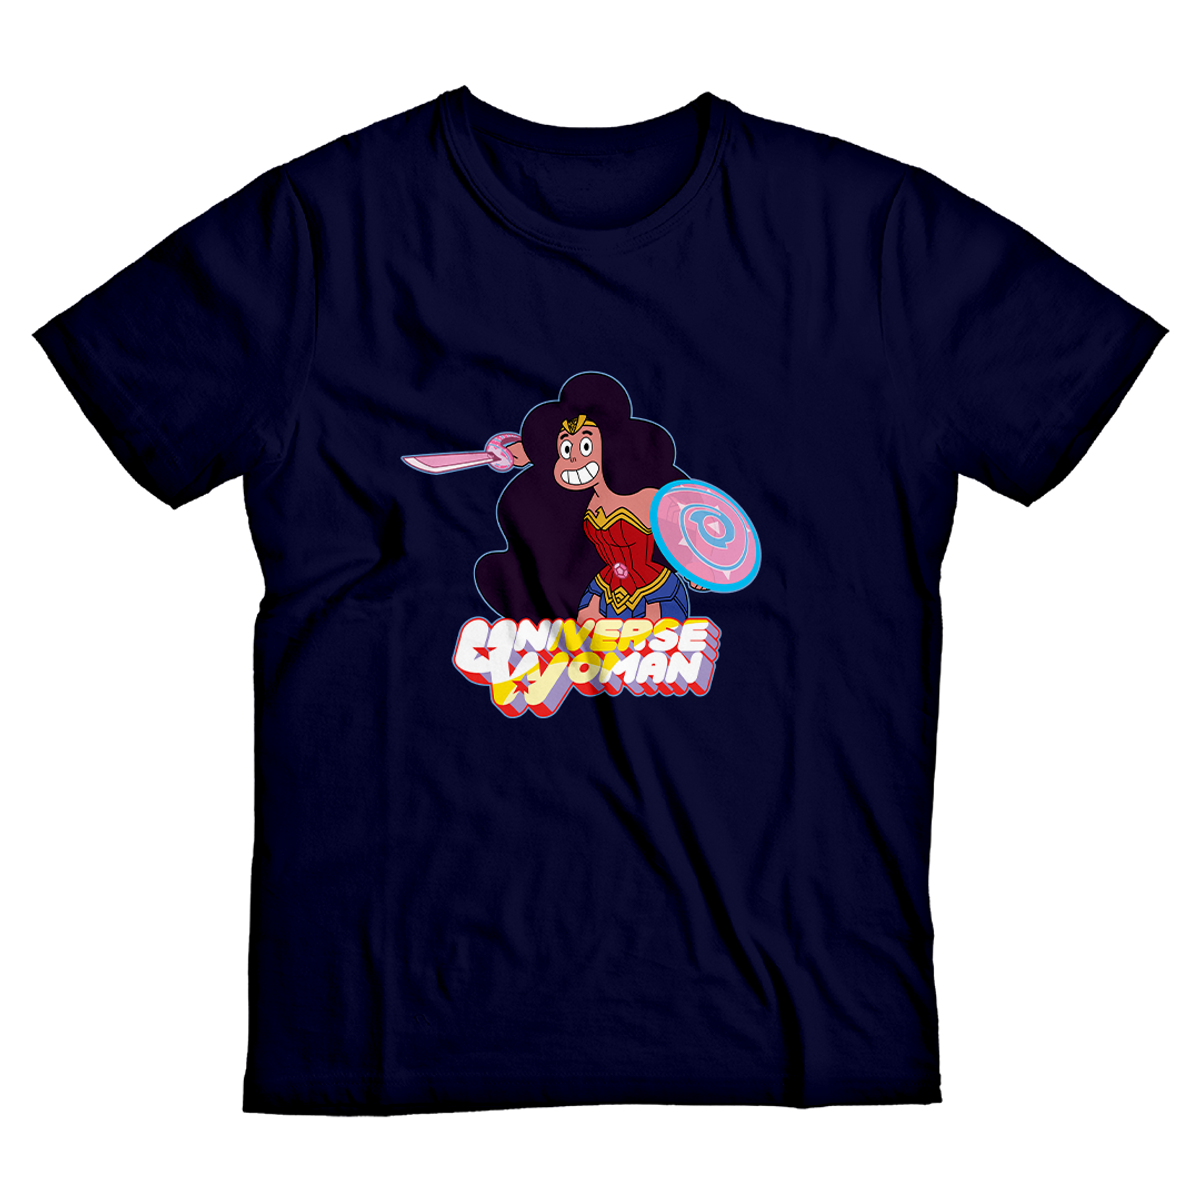 Nome do produto: Universe Woman <br>[T-Shirt Plus Size]</br>